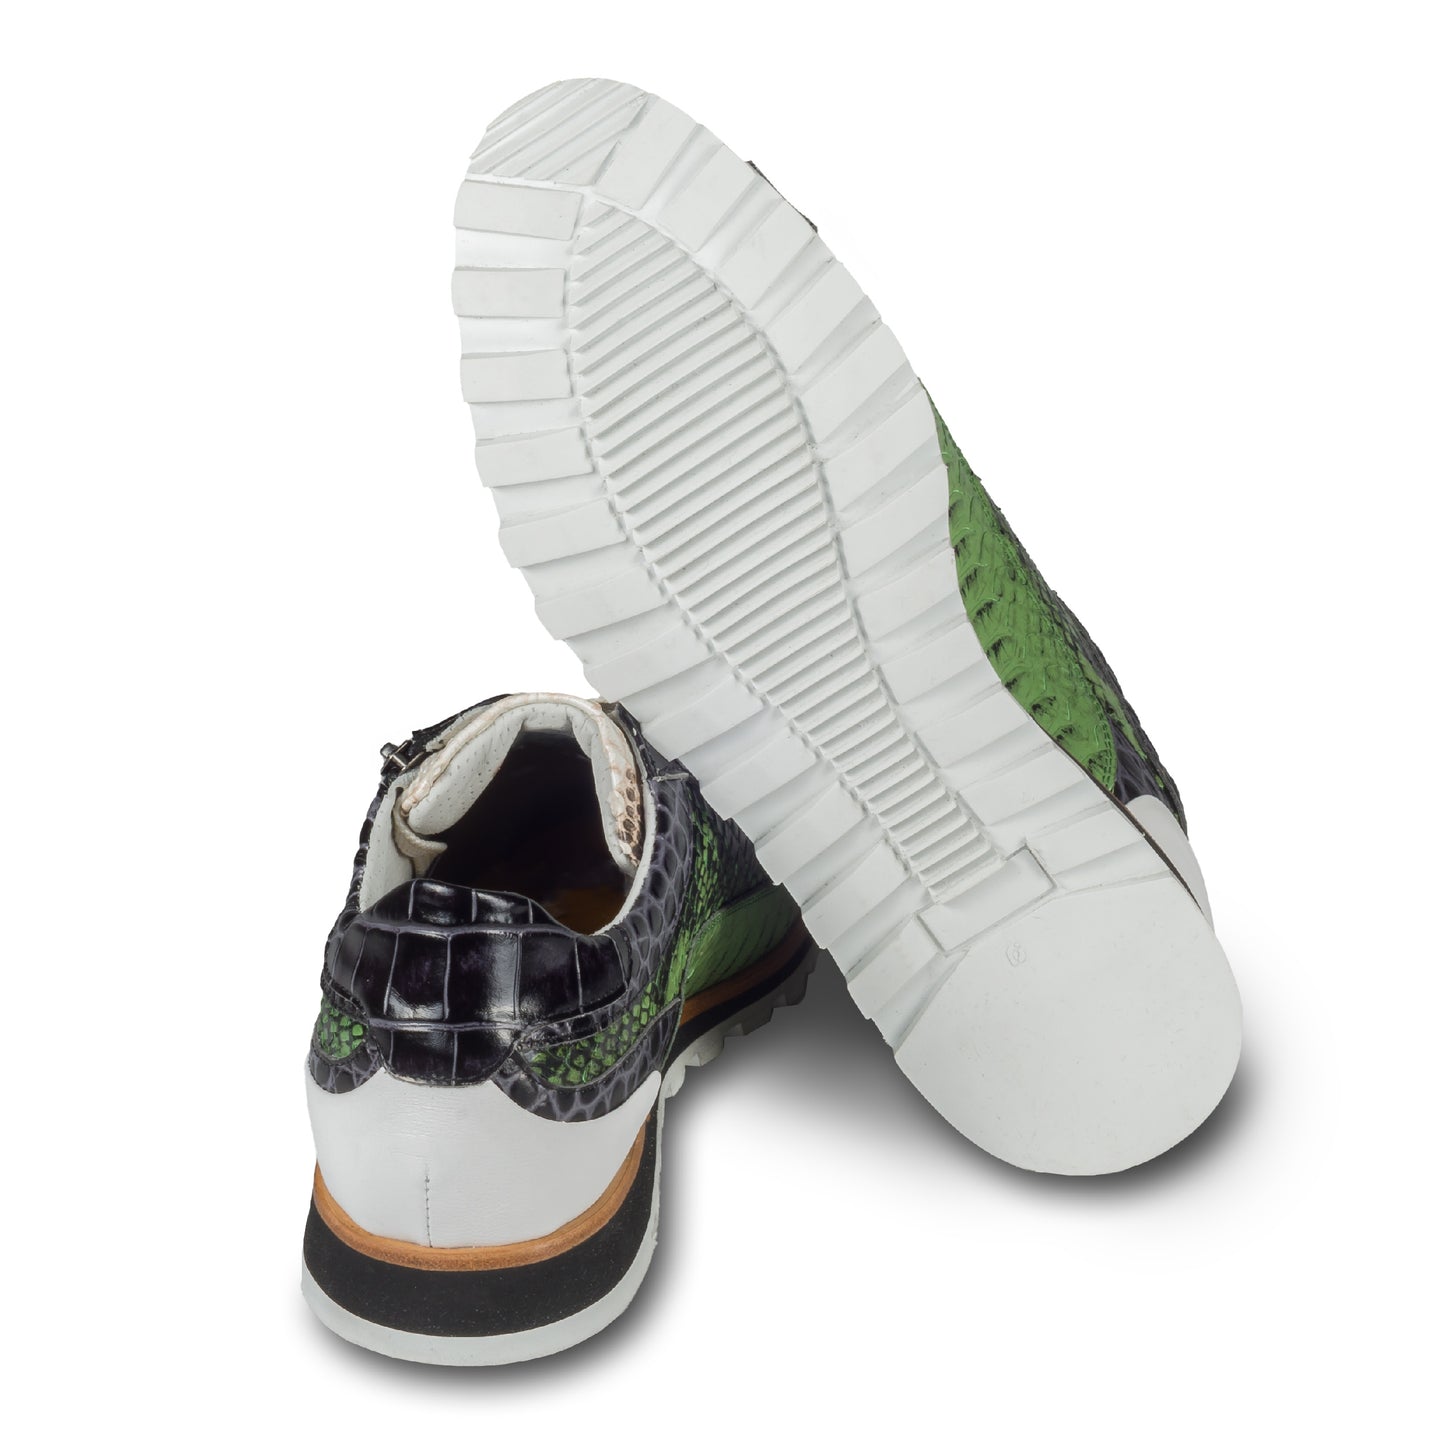 Lorenzi Herren Leder Sneaker in grün / creme / schwarzer Schlangen-Optik und seitlichem Reißverschluß. Handgefertigt in Italien. Ansicht der Ferse und Sohlenunterseite. 